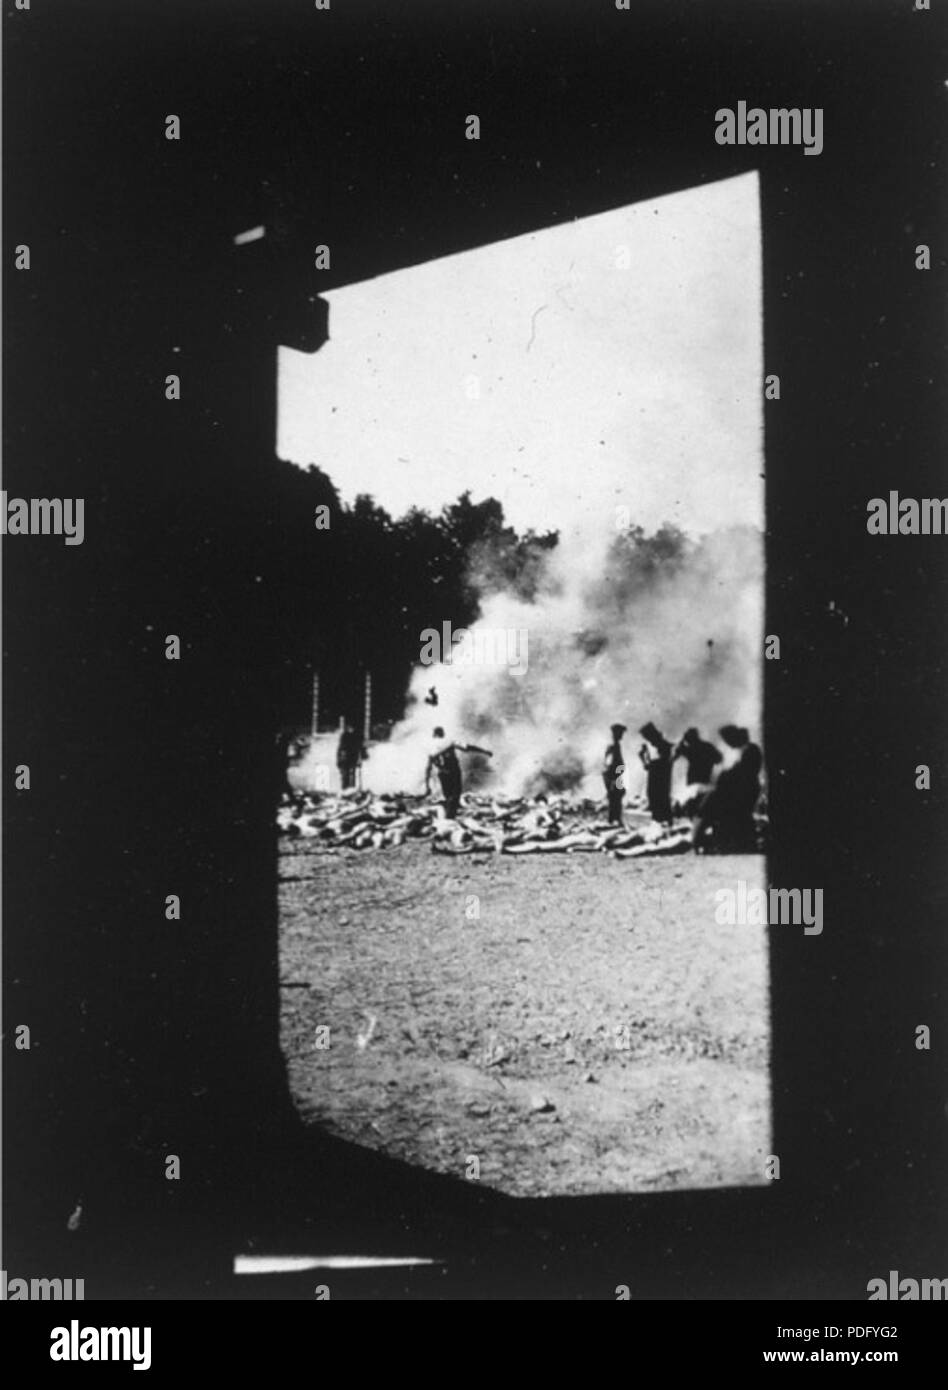 131 Fotografia-wykonana-przez-Sonderkommando-w-Auschwitz Stock Photo